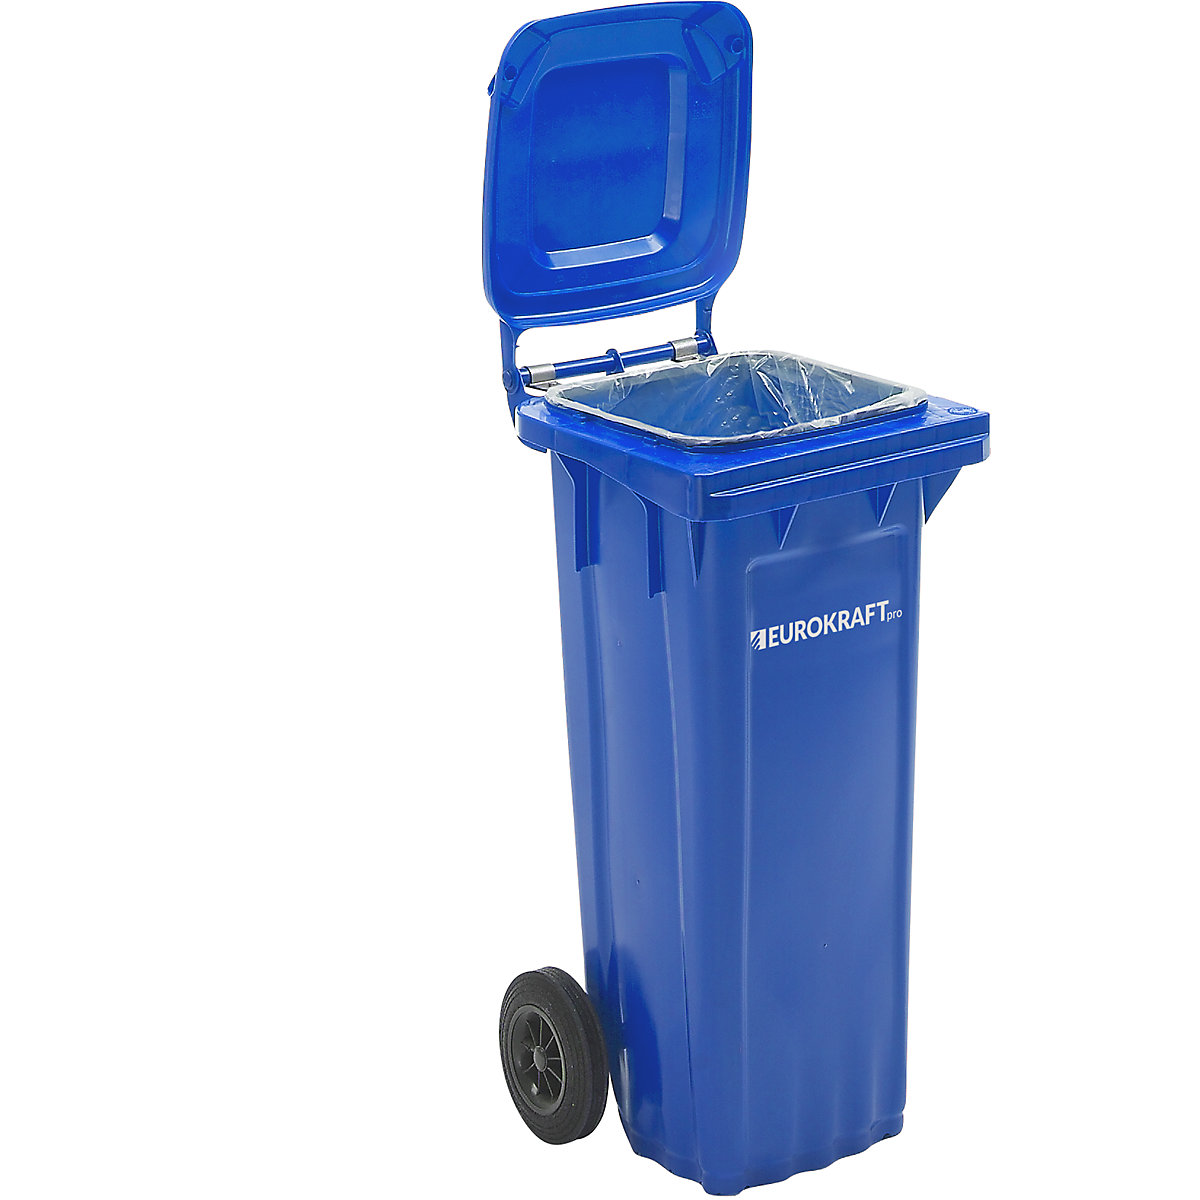 Mülltonne aus Kunststoff DIN EN 840 eurokraft pro, Volumen 80 l, BxHxT 448 x 932 x 514 mm, blau